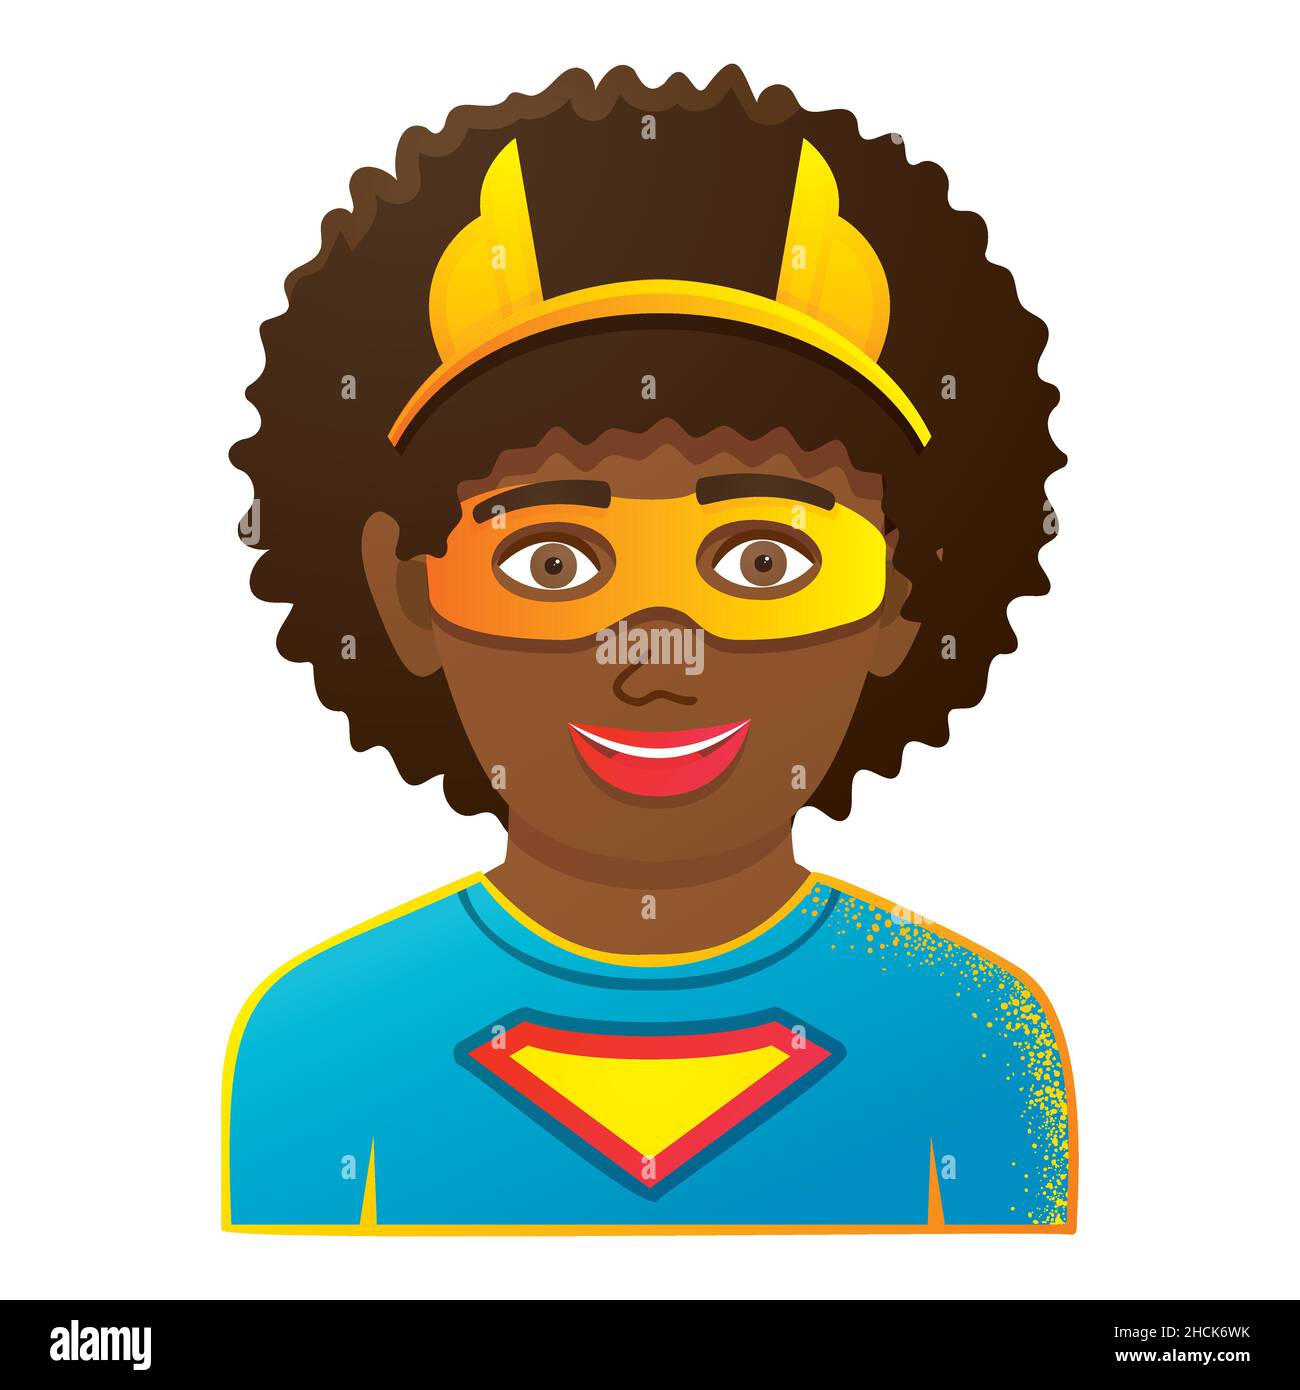 Enfant portant un costume coloré de Superhero.Fille ou garçon avec masque jaune.Isolé sur fond blanc.Illustration vectorielle.Icône avec visage amusant pour enfants. Illustration de Vecteur